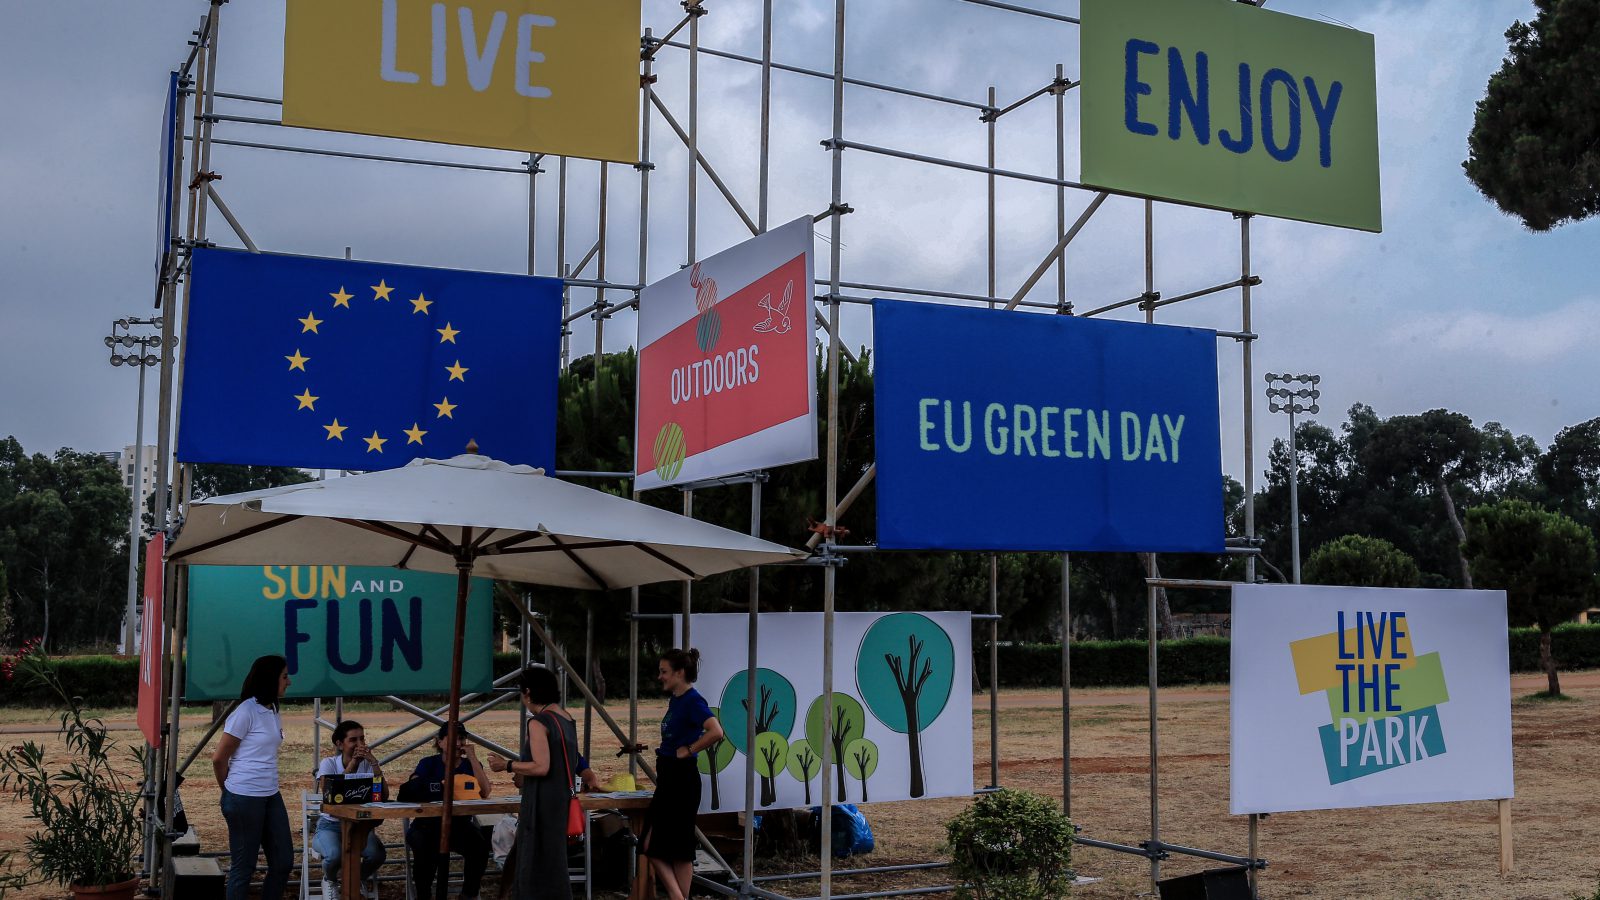 The EU Green Day in Lebanon 2019 #EU4Environment #EUinLebanon